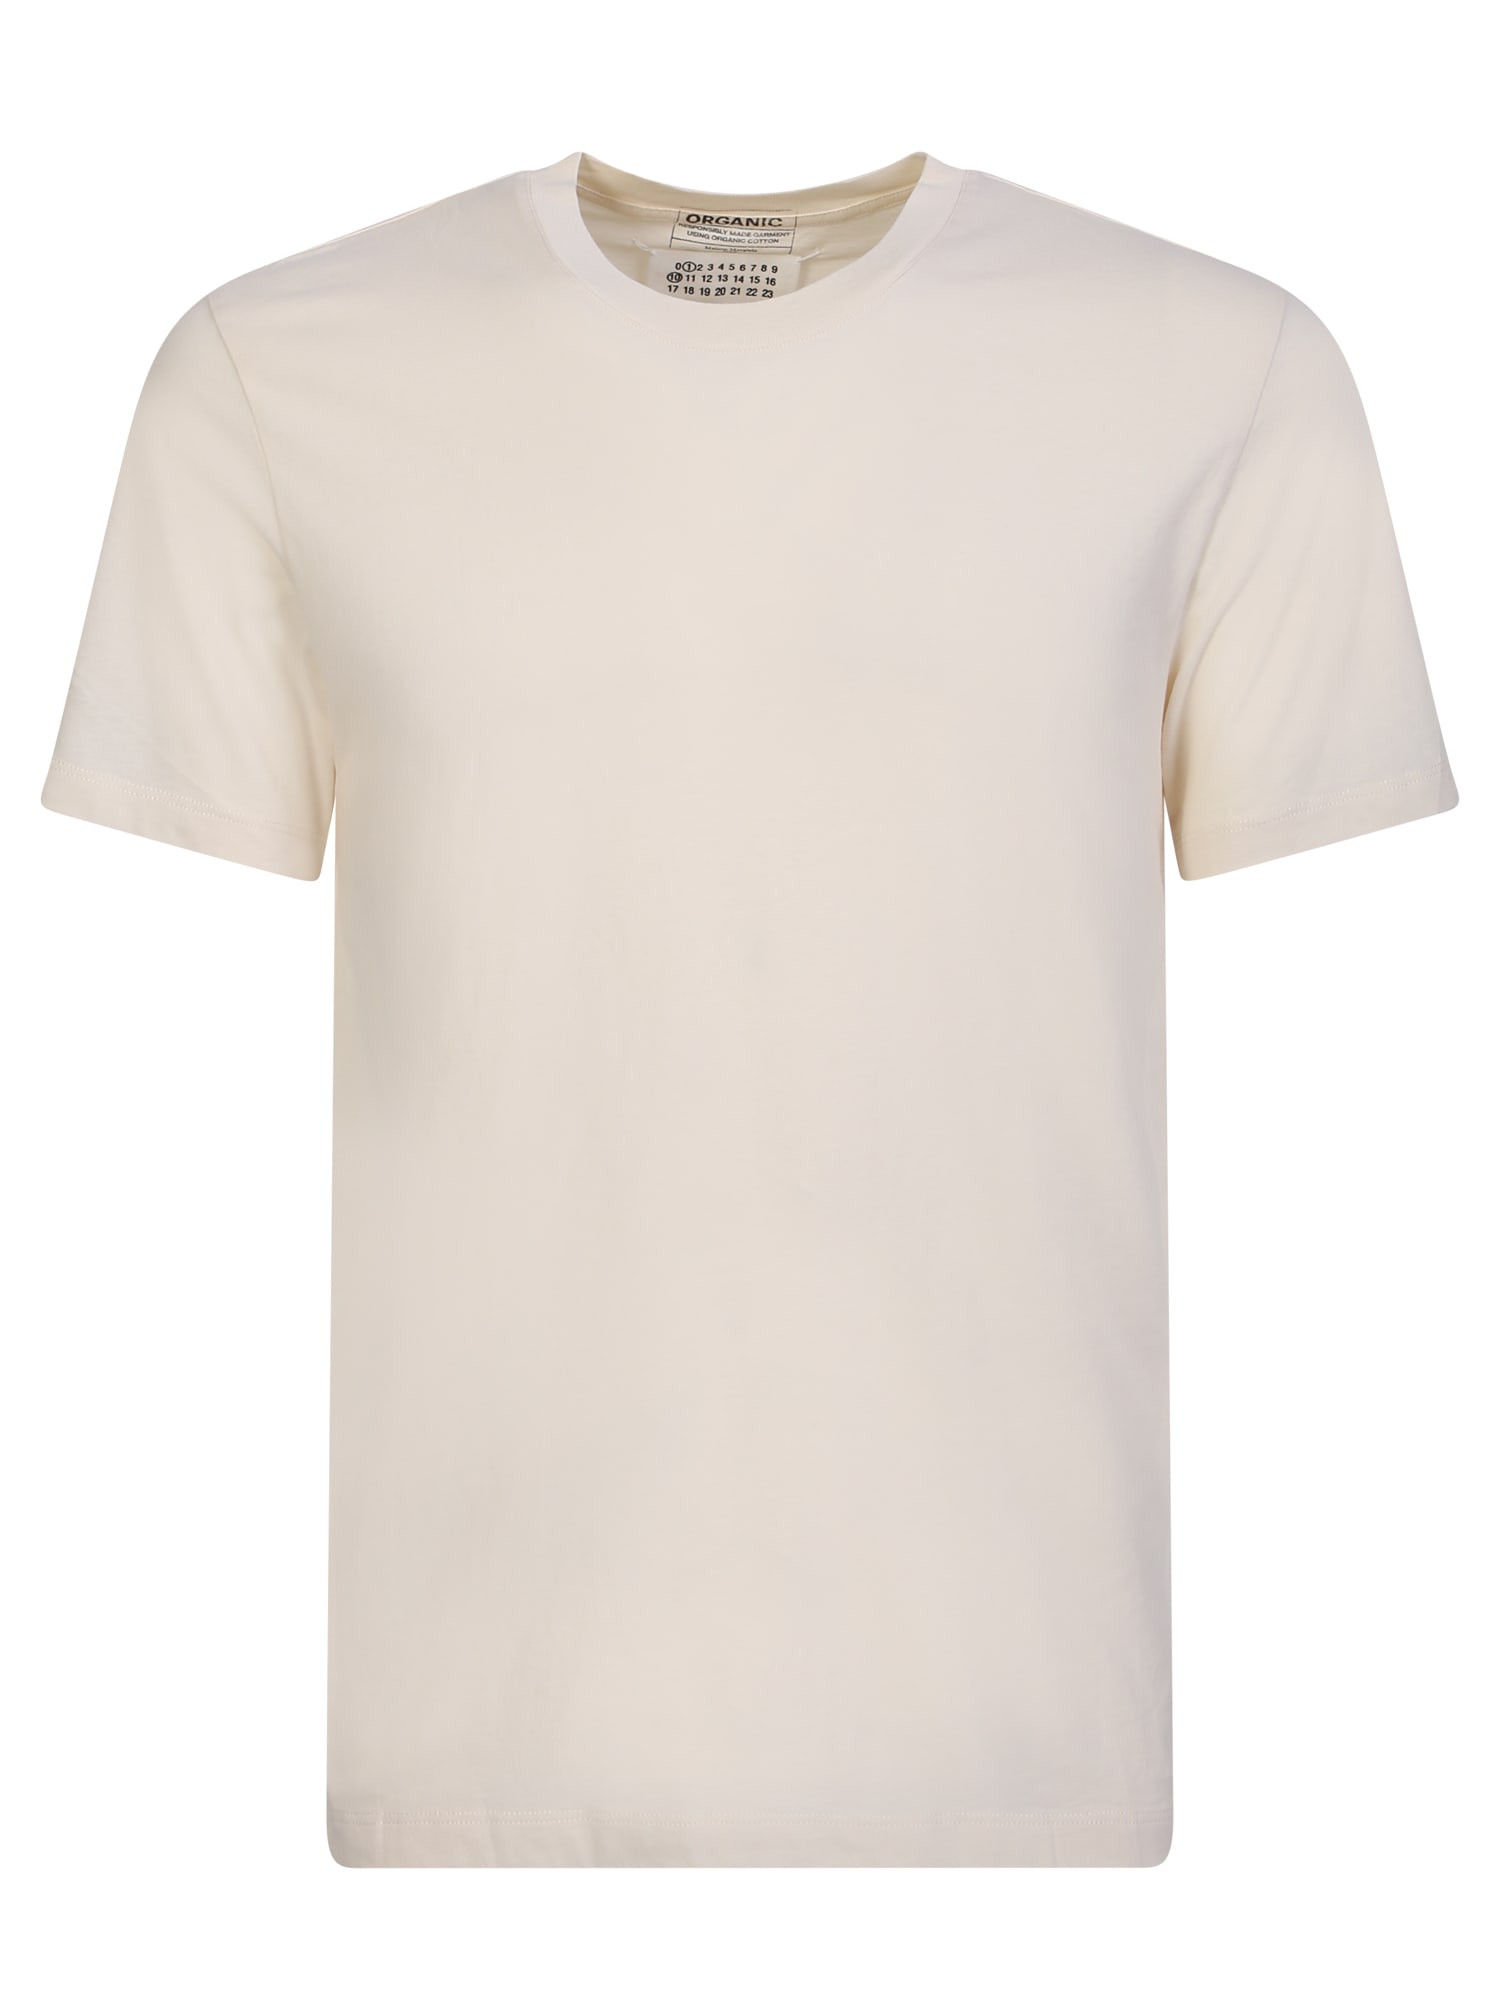 Shop Maison Margiela Basic White T-shirt